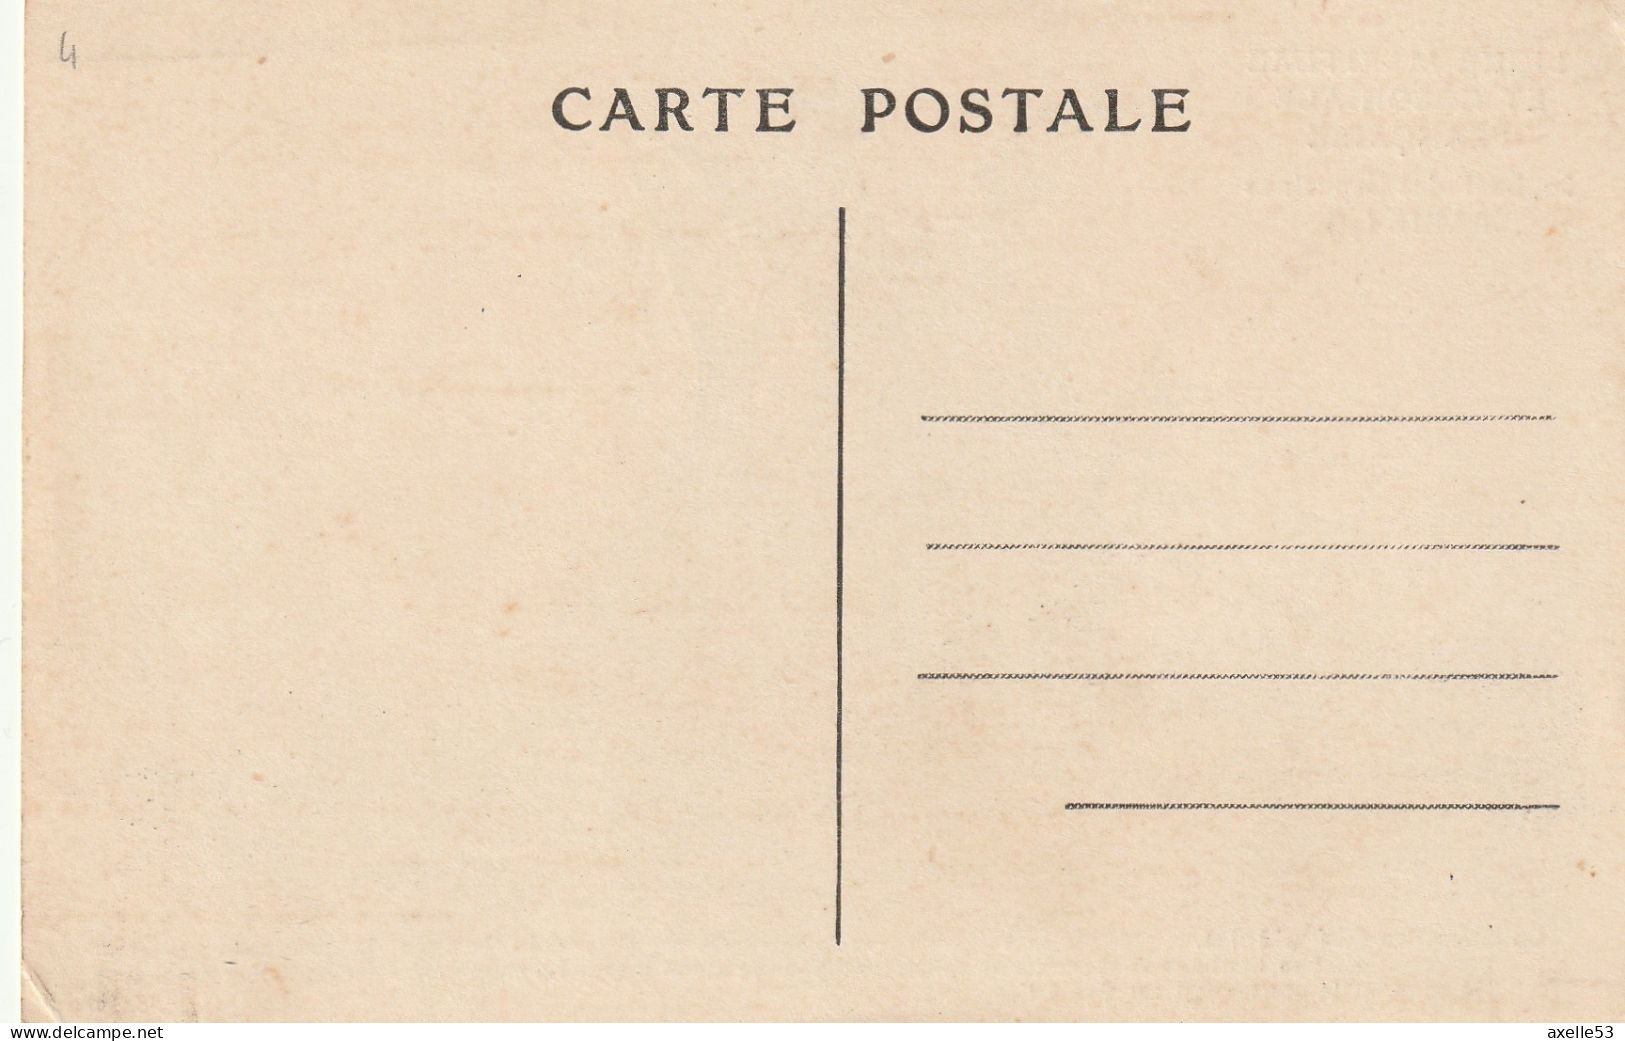 Ligue Maritime Et Coloniale Française 08 (10156) La Caraque (XIVe Siècle) - Colecciones Y Lotes